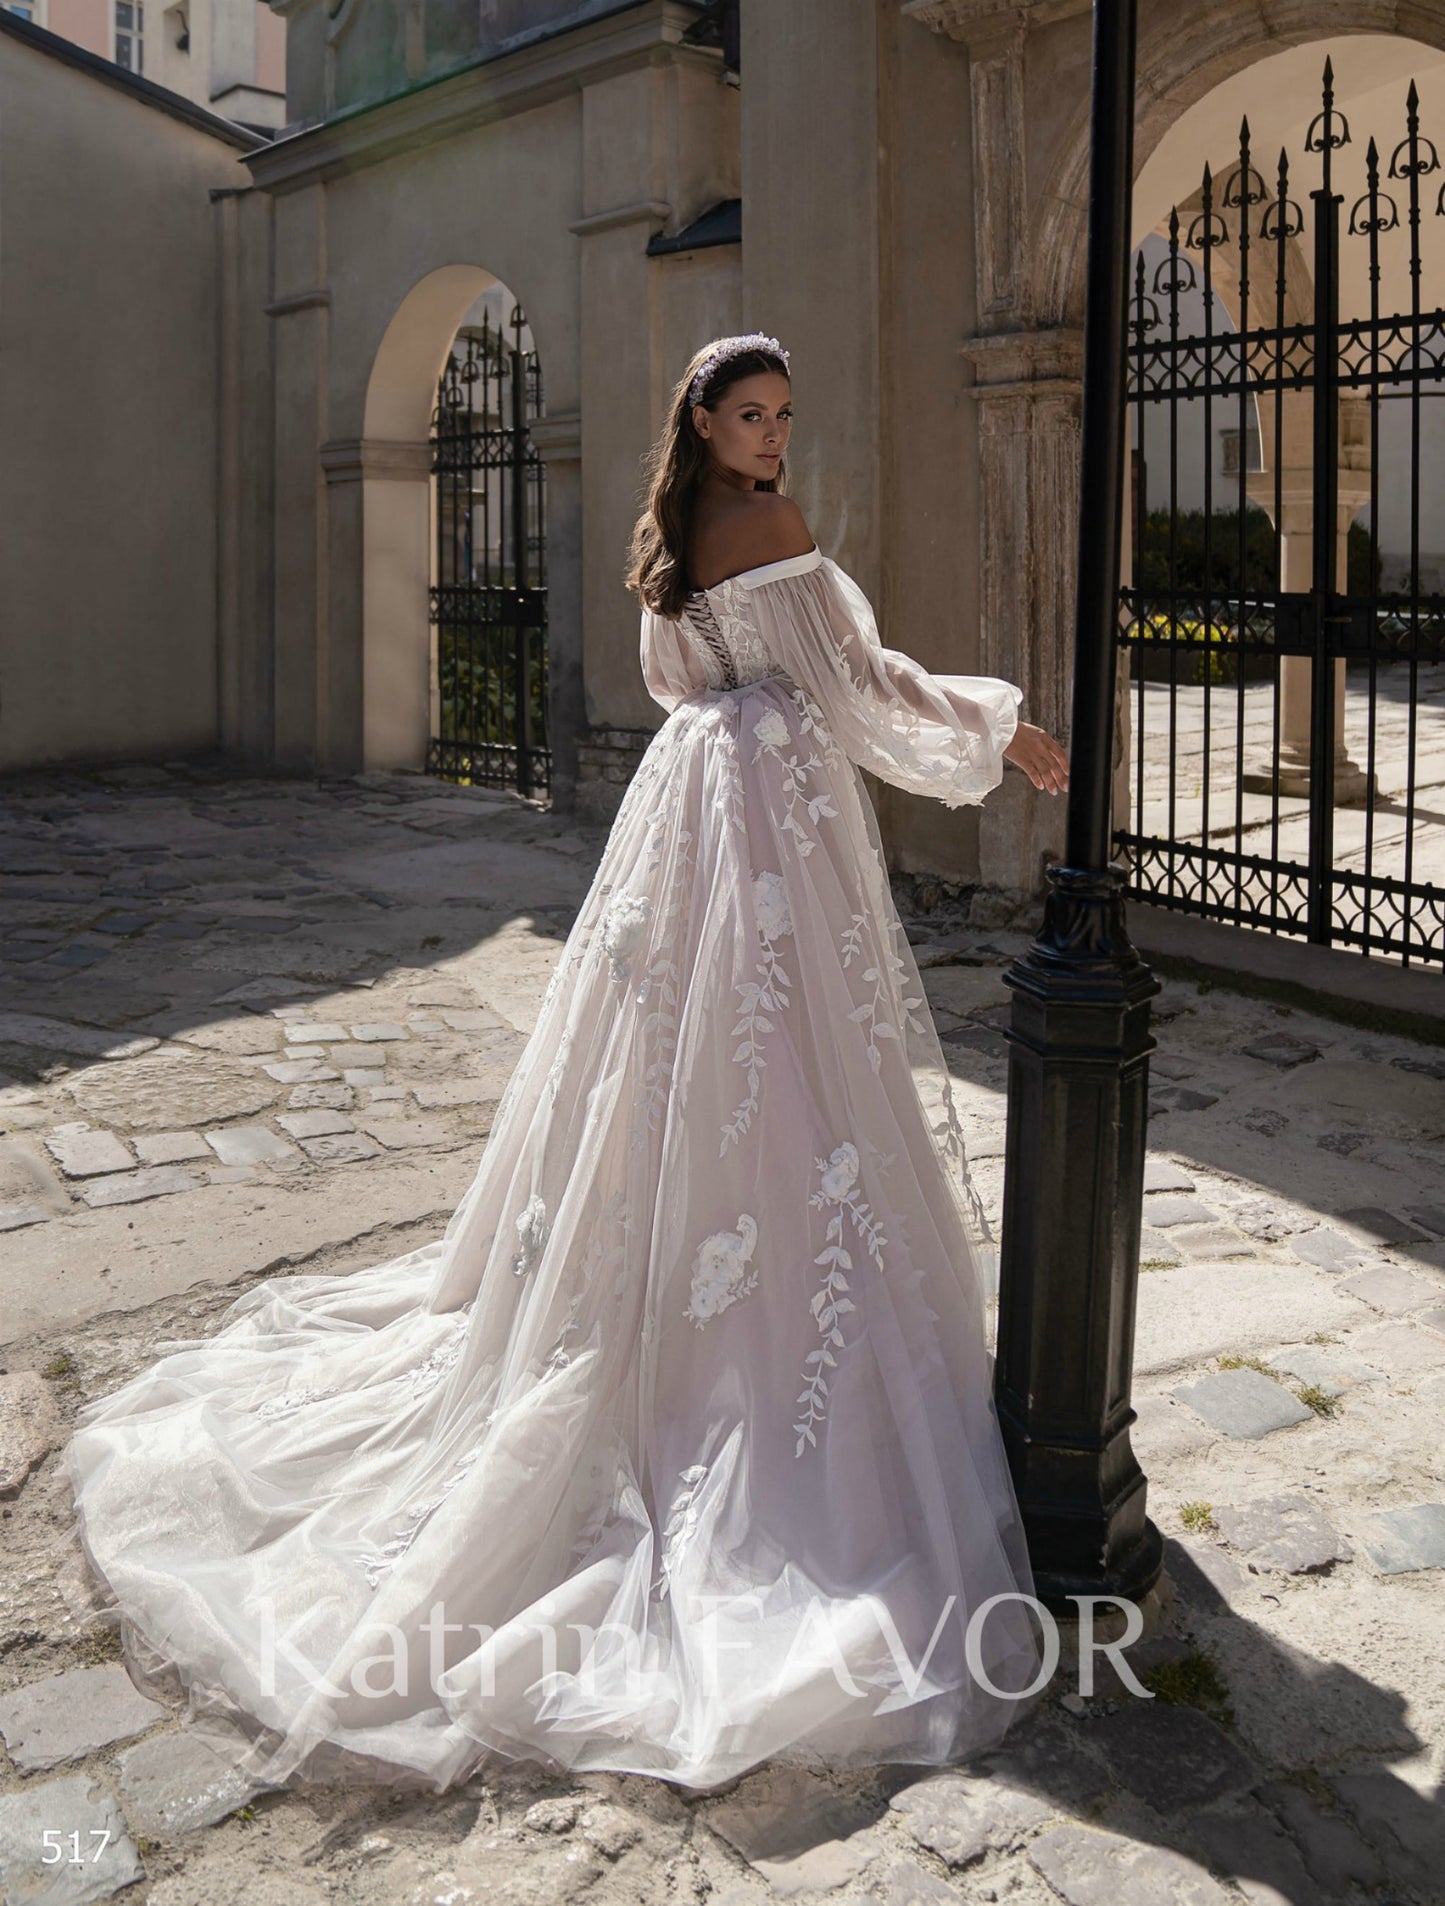 KatrinFAVORboutique-Fairytale princess wedding dress